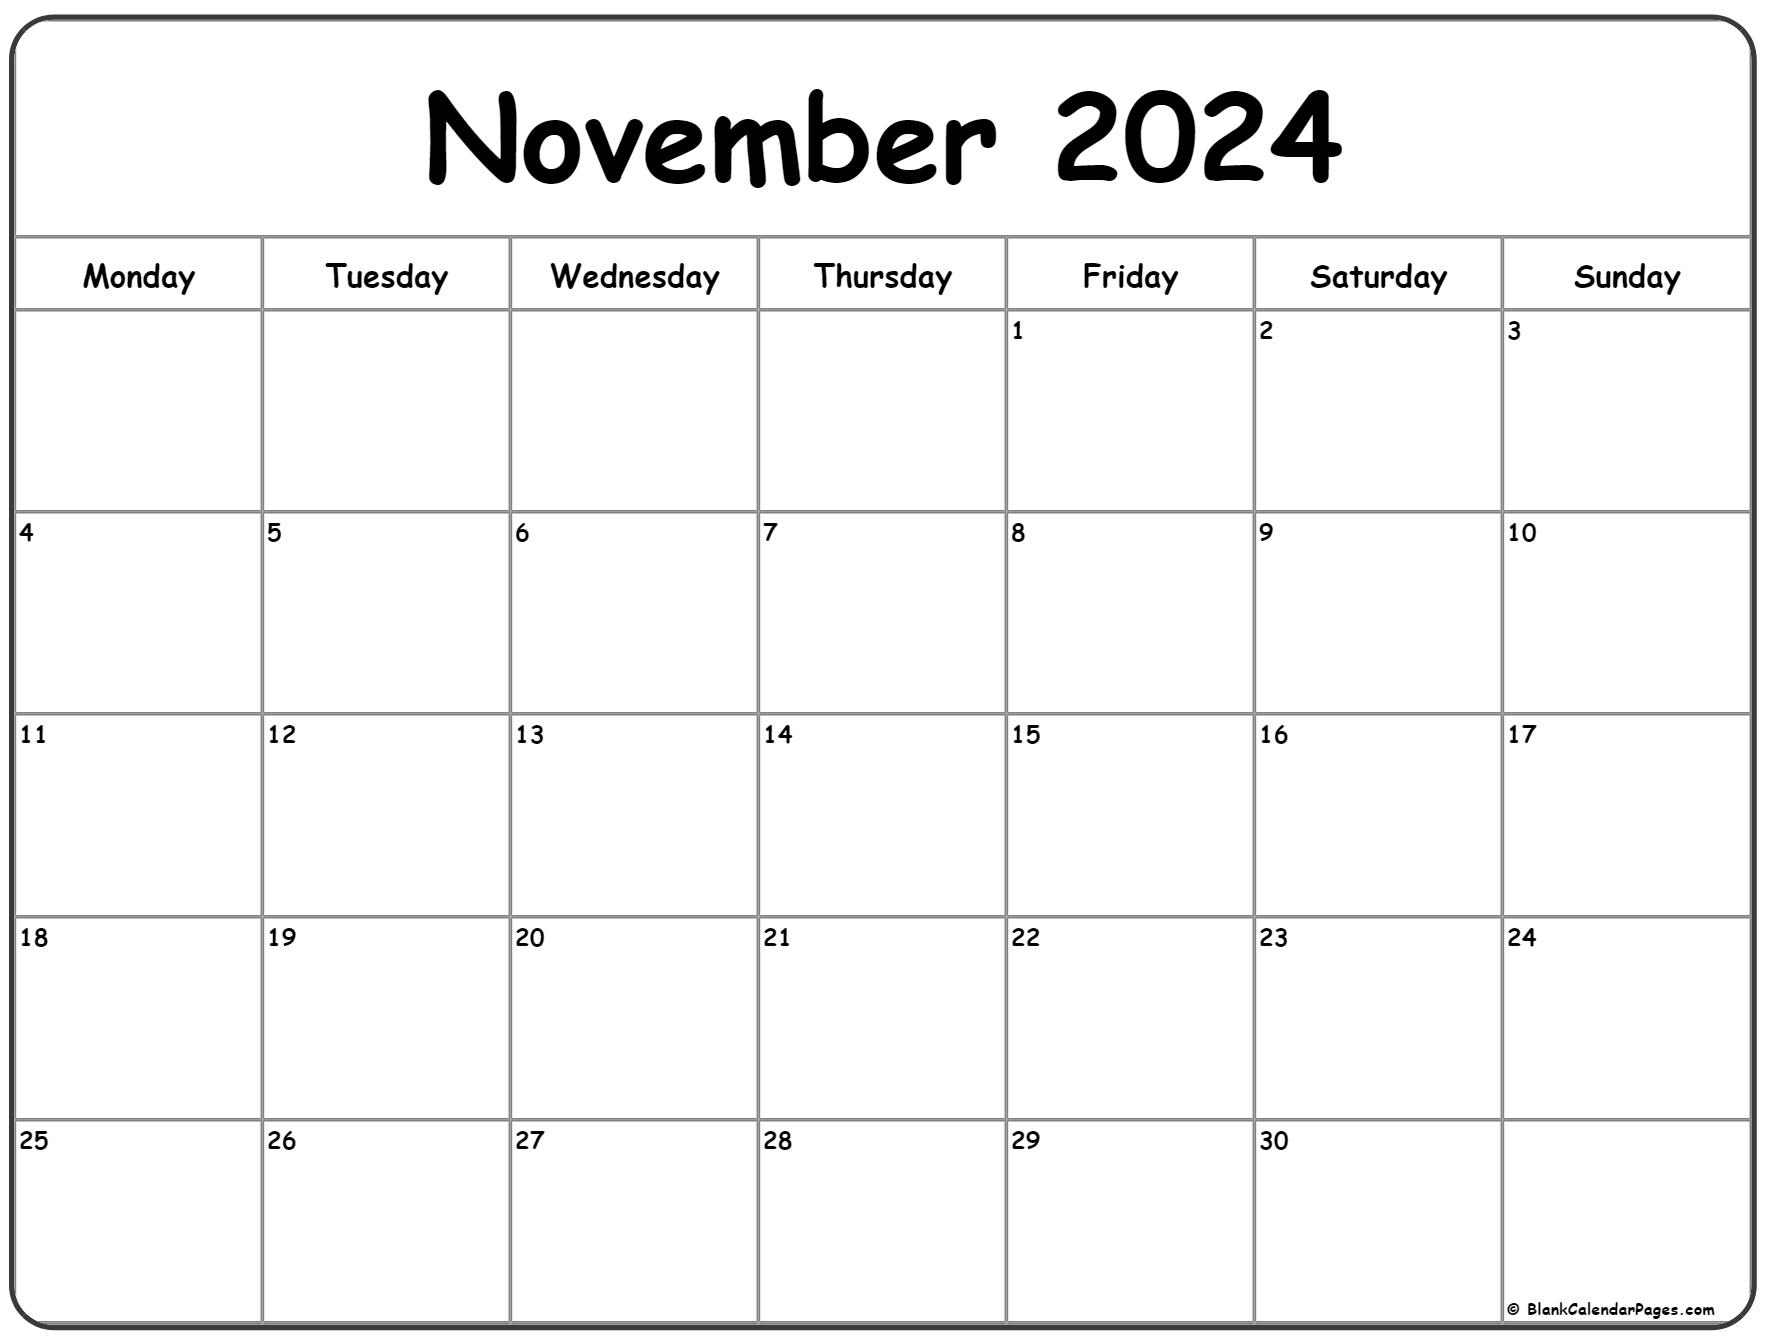 November 2024 Monday Calendar | Monday To Sunday | Printable Calendar Nov 2024